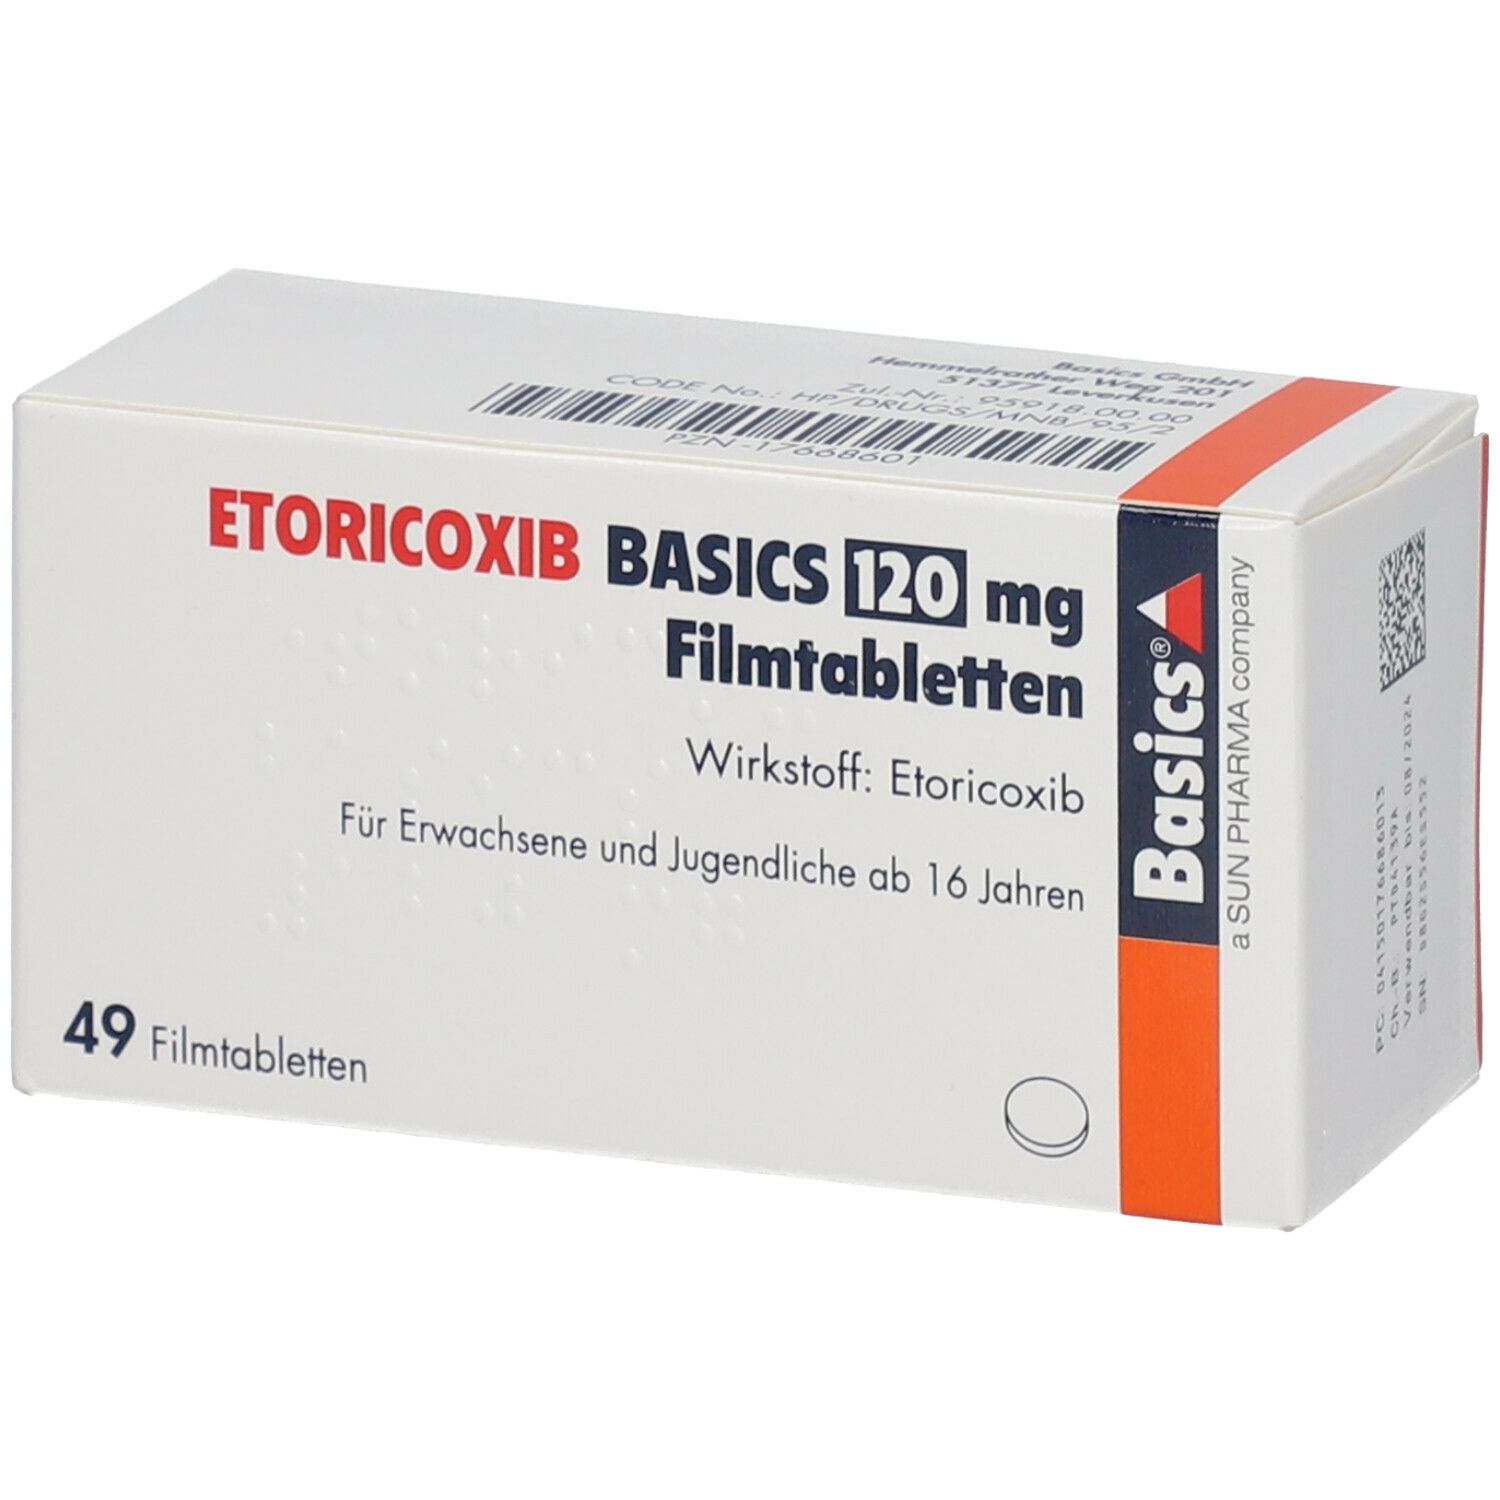 ETORICOXIB BASICS 120 mg Filmtabletten